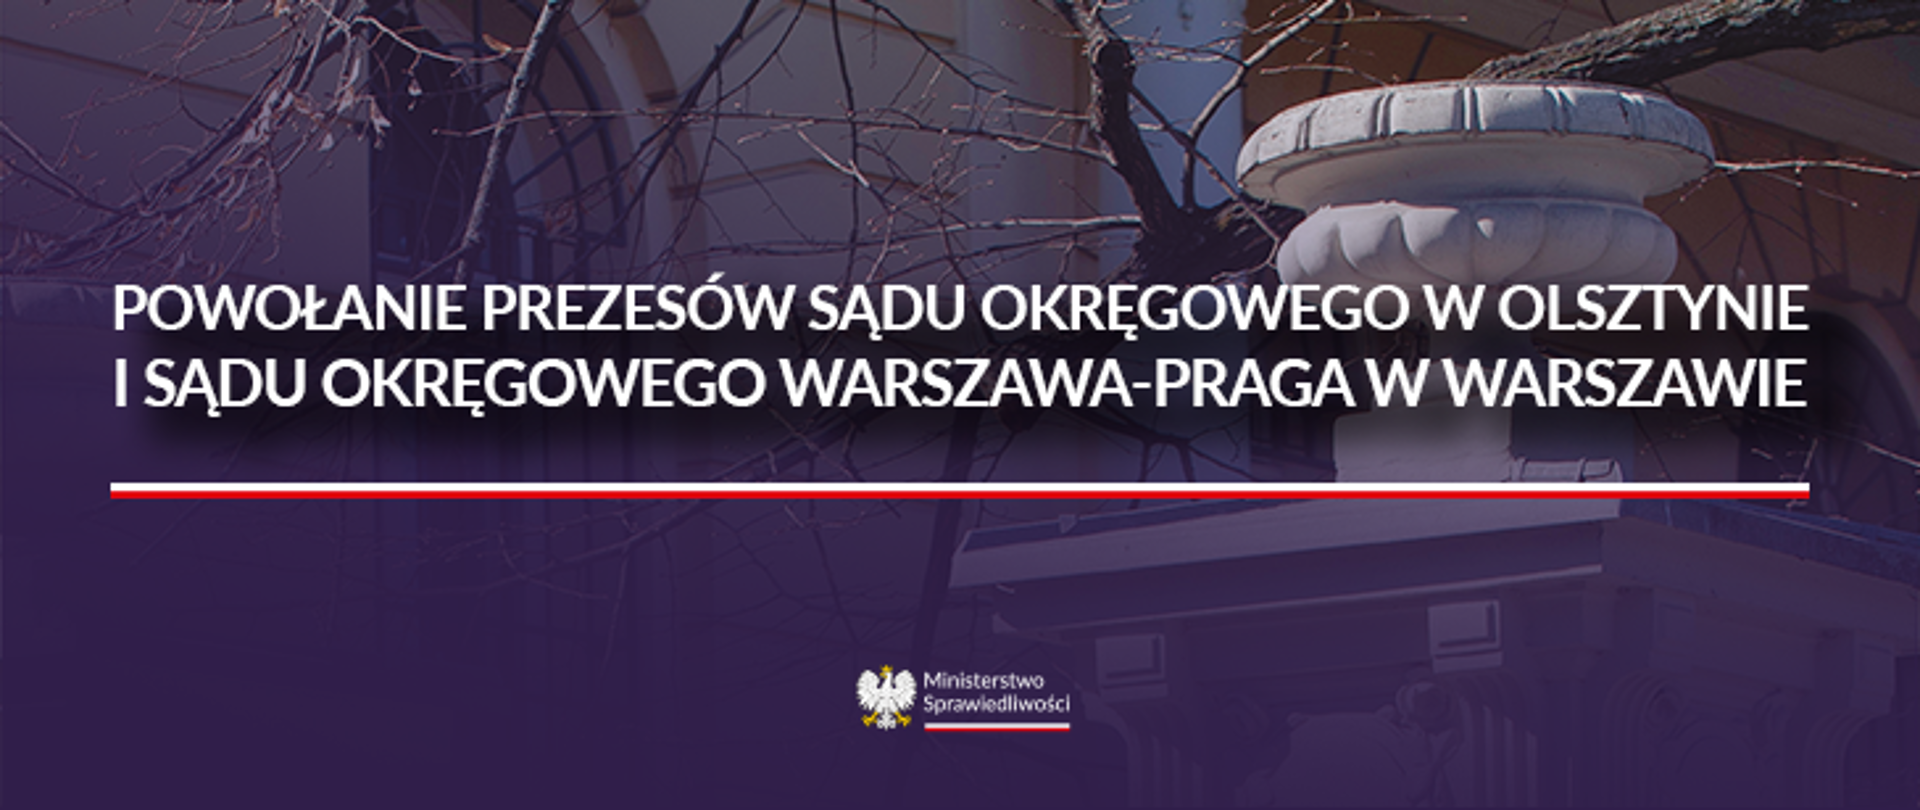 Powołanie prezesów Sądu Okręgowego w Olsztynie i Sądu Okręgowego Warszawa-Praga w Warszawie
